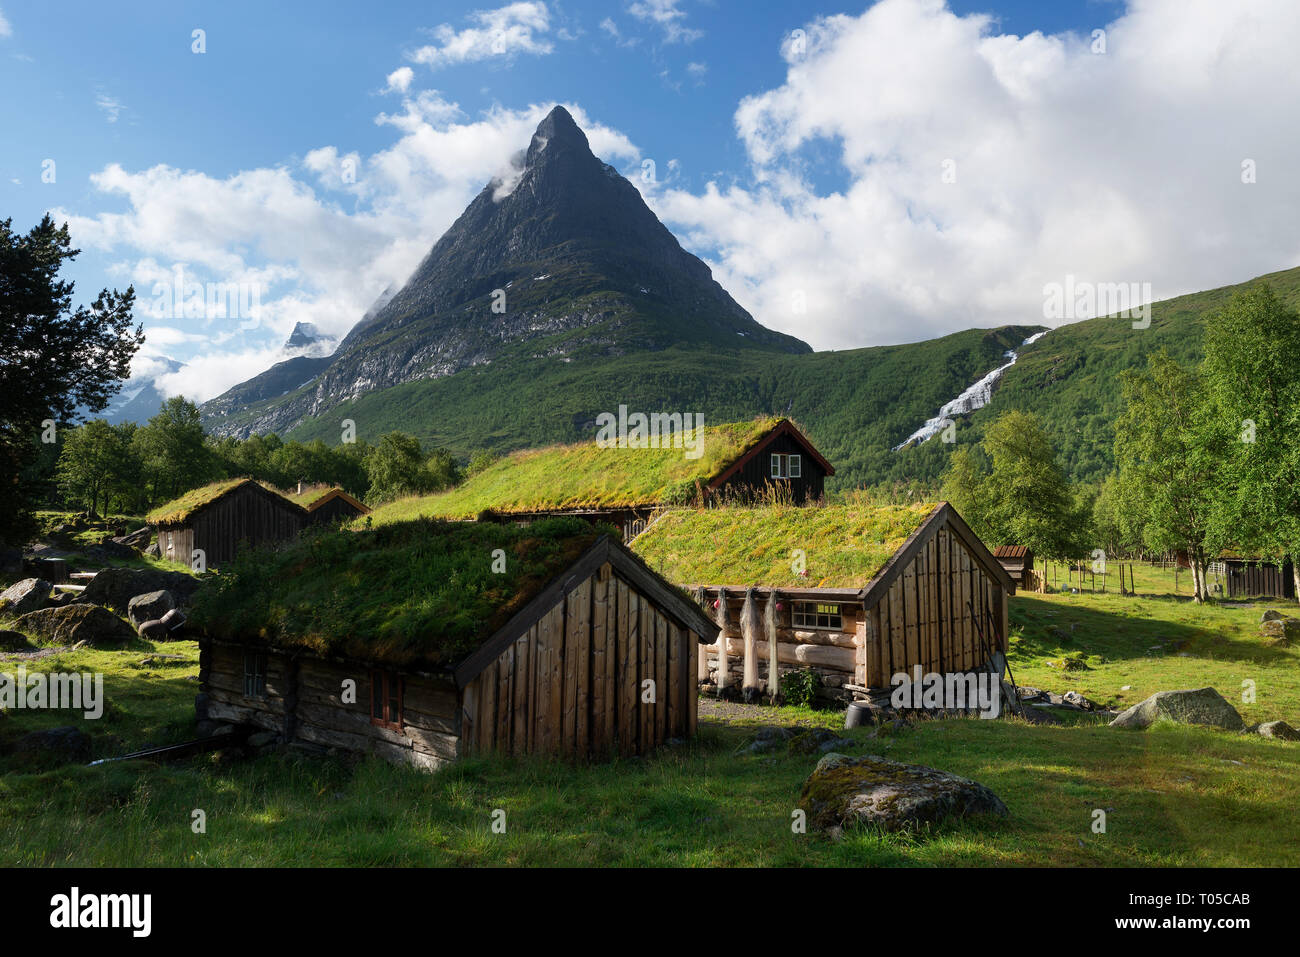 Innerdalen - vallée de la Norvège. Maisons traditionnelle norvégienne avec un toit de gazon. Vieille ferme hôtel près du lac de Innerdalsvatna Banque D'Images